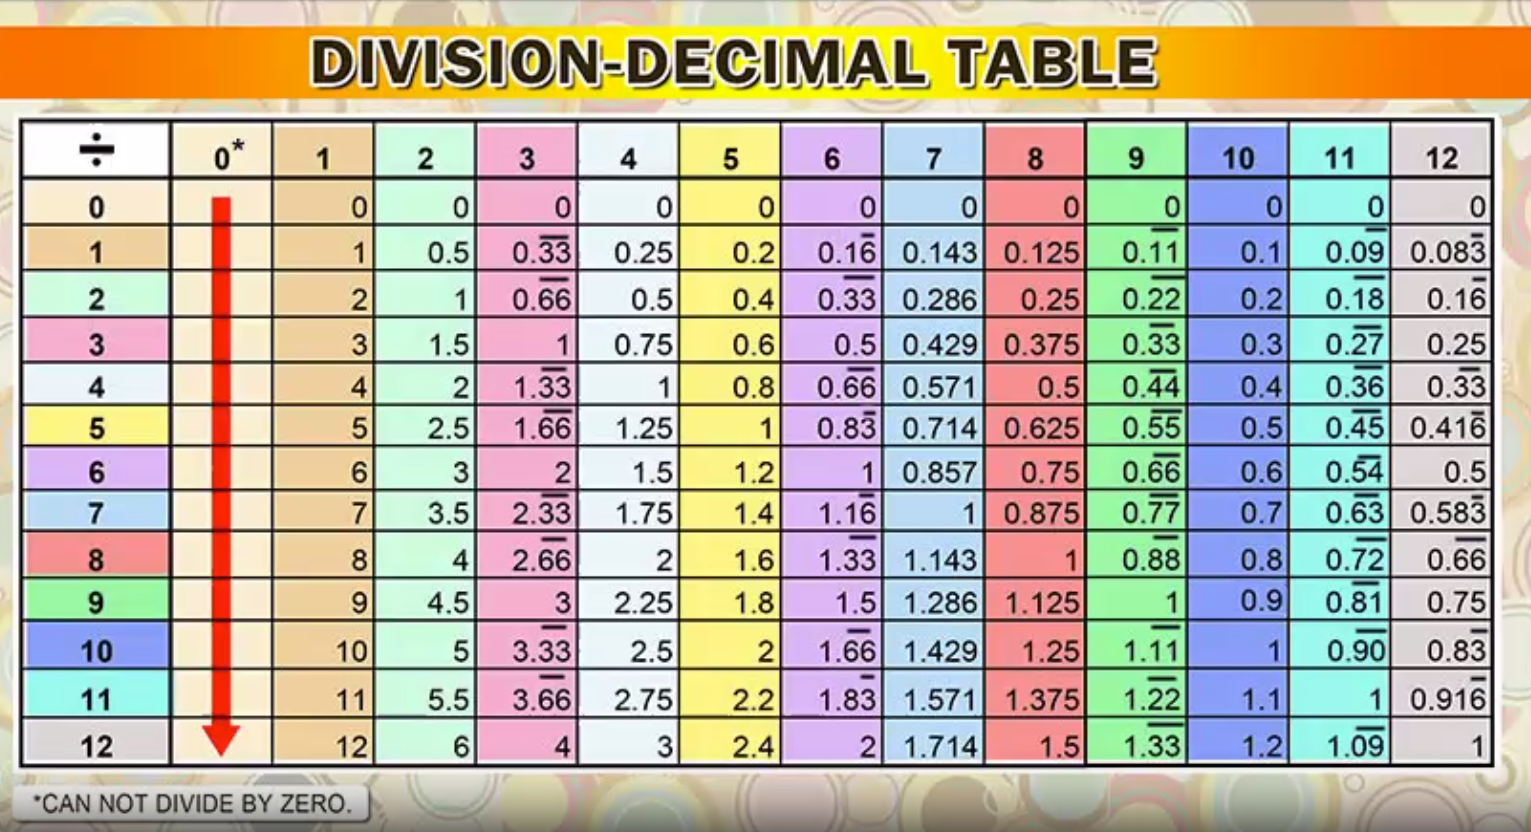 Dividing decimals